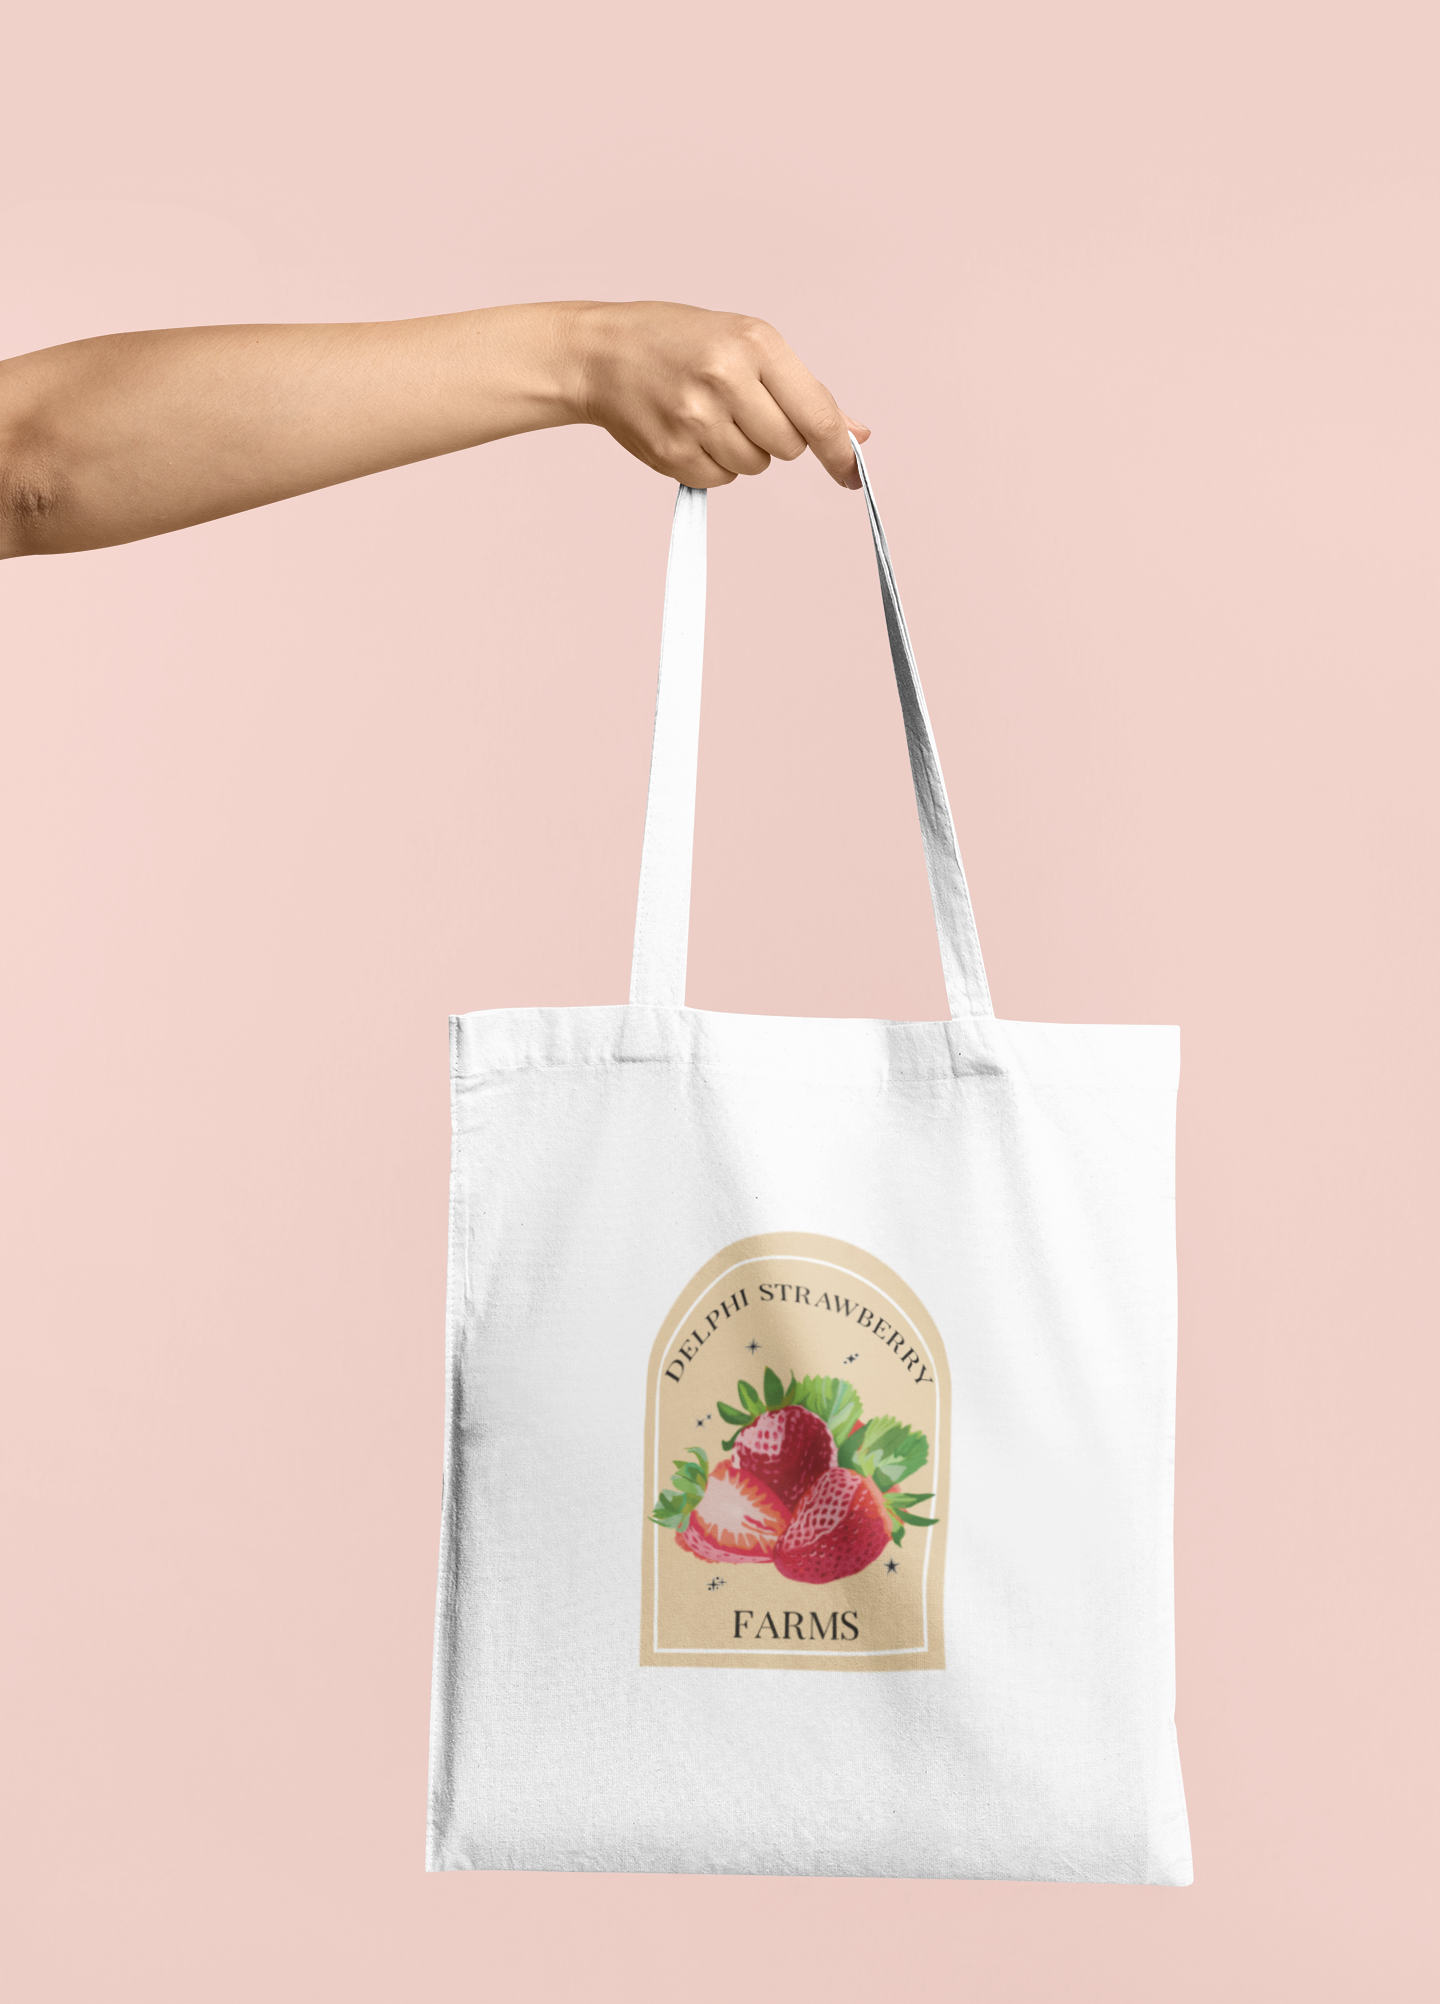 Delphi Strawberry Farms Tote Bag